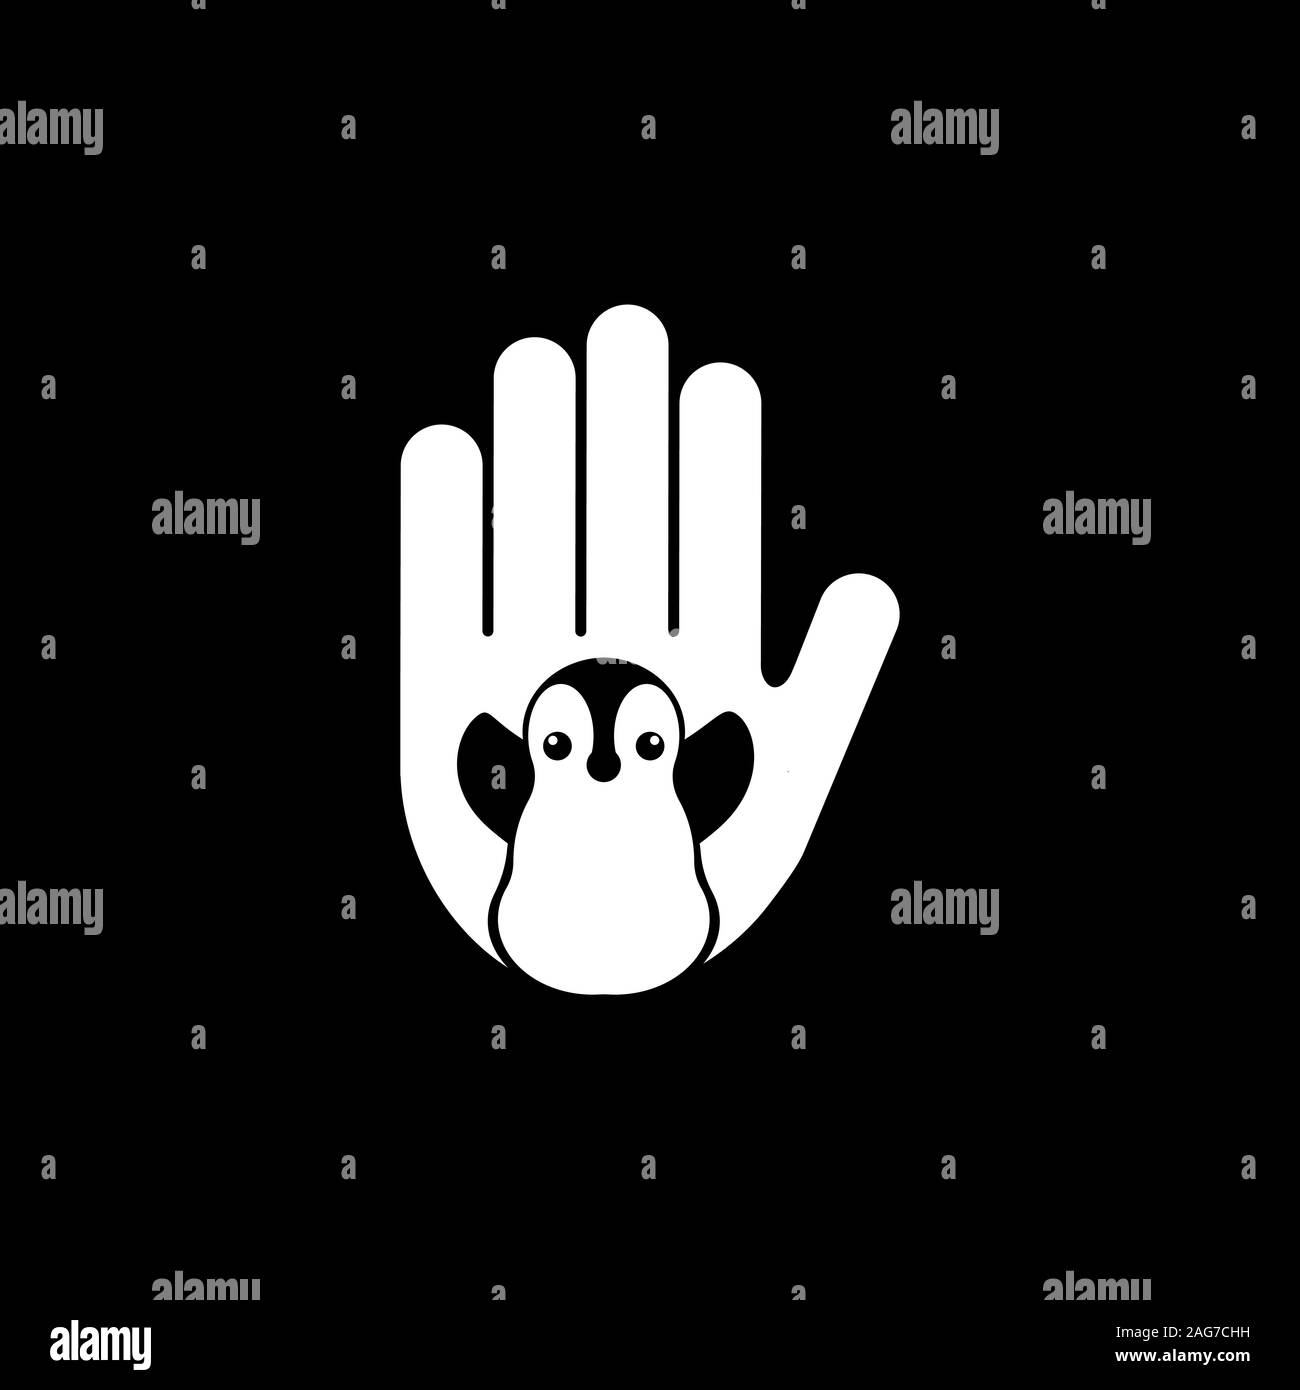 Noir et blanc isolé penguin dans la main logo Vector. Sauver les animaux sauvages d'extinction. Journée mondiale de penguin. Le bénévolat signe. Logotype des enfants. La faune Illustration de Vecteur